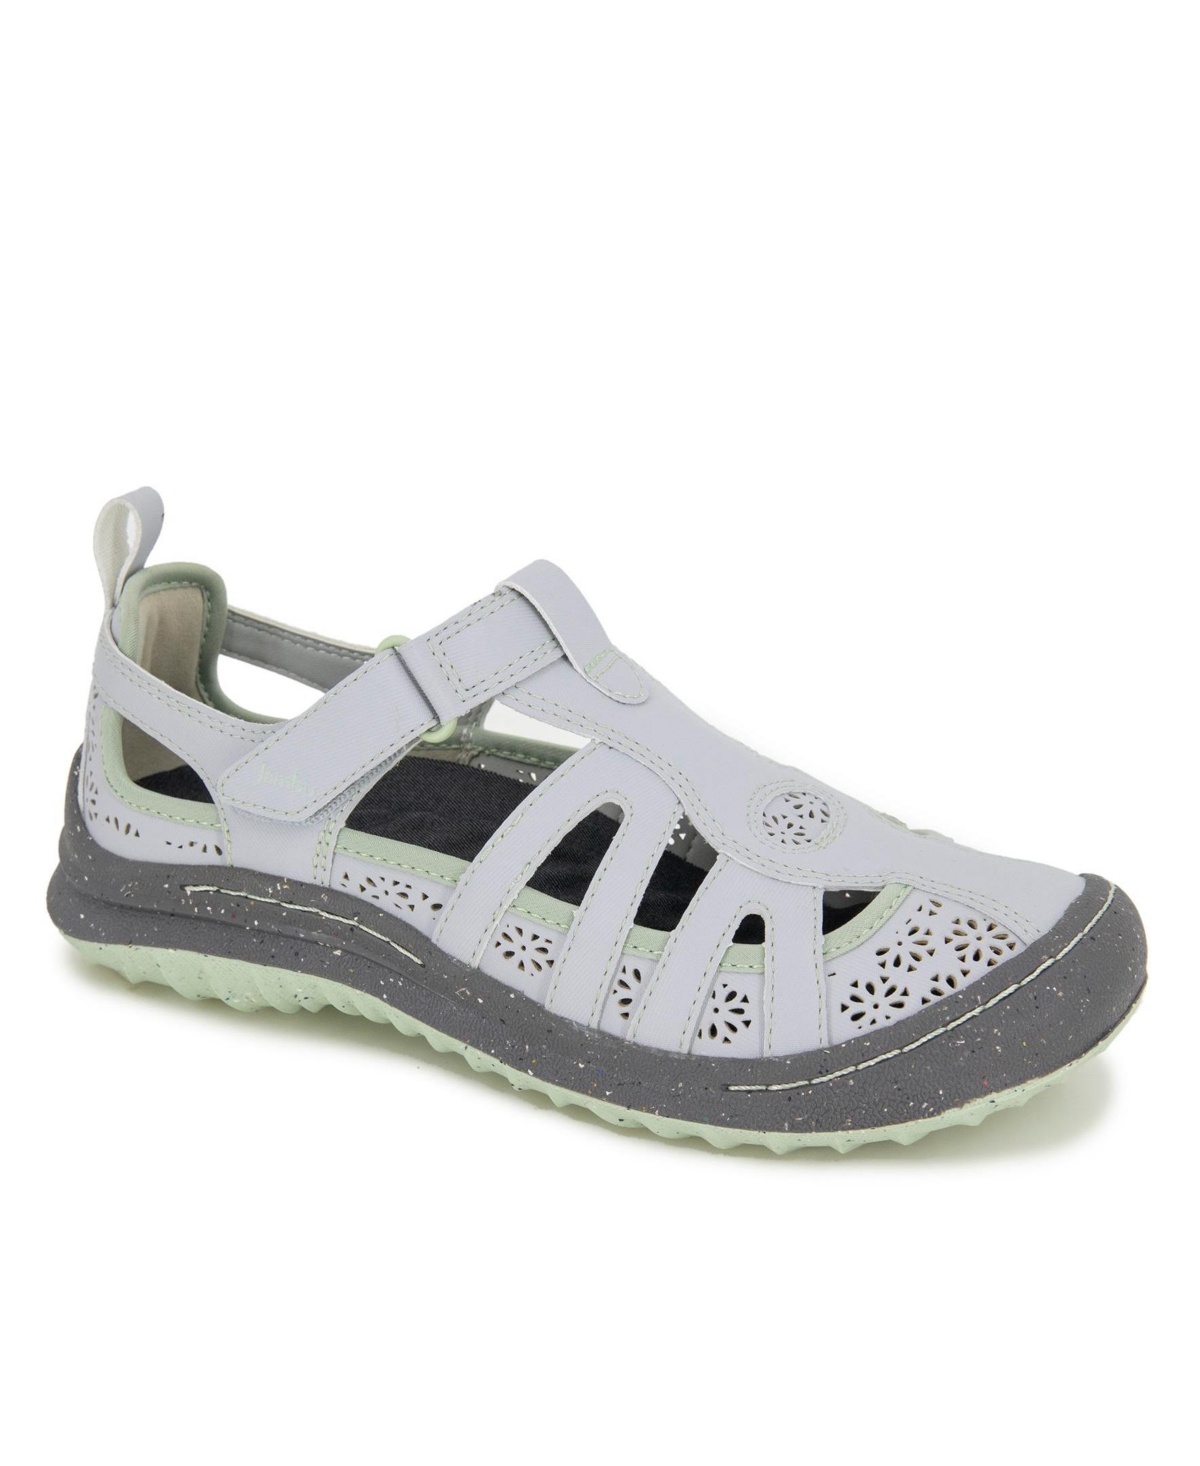 Women's Joy Flat Sandals - Light Gray, Pale Moss